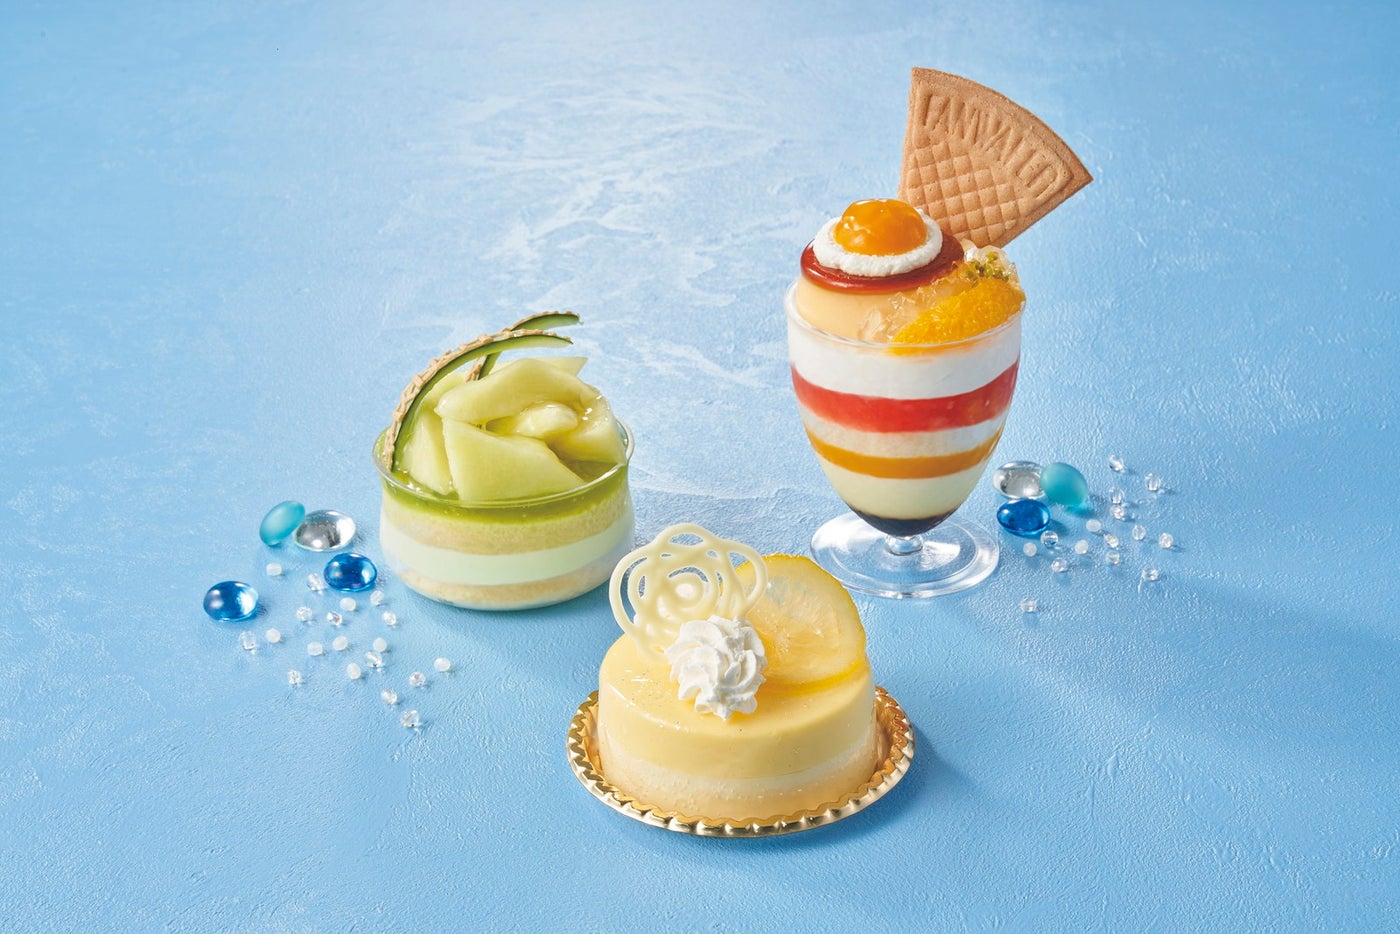 （左）マスクメロンのケーキ～フロマージュブラン～（中）レモンとマスカルポーネのケーキ（右）ダブルプリン・ミニパフェ～2種の柑橘～／画像提供：ユニバーサル・スタジオ・ジャパン